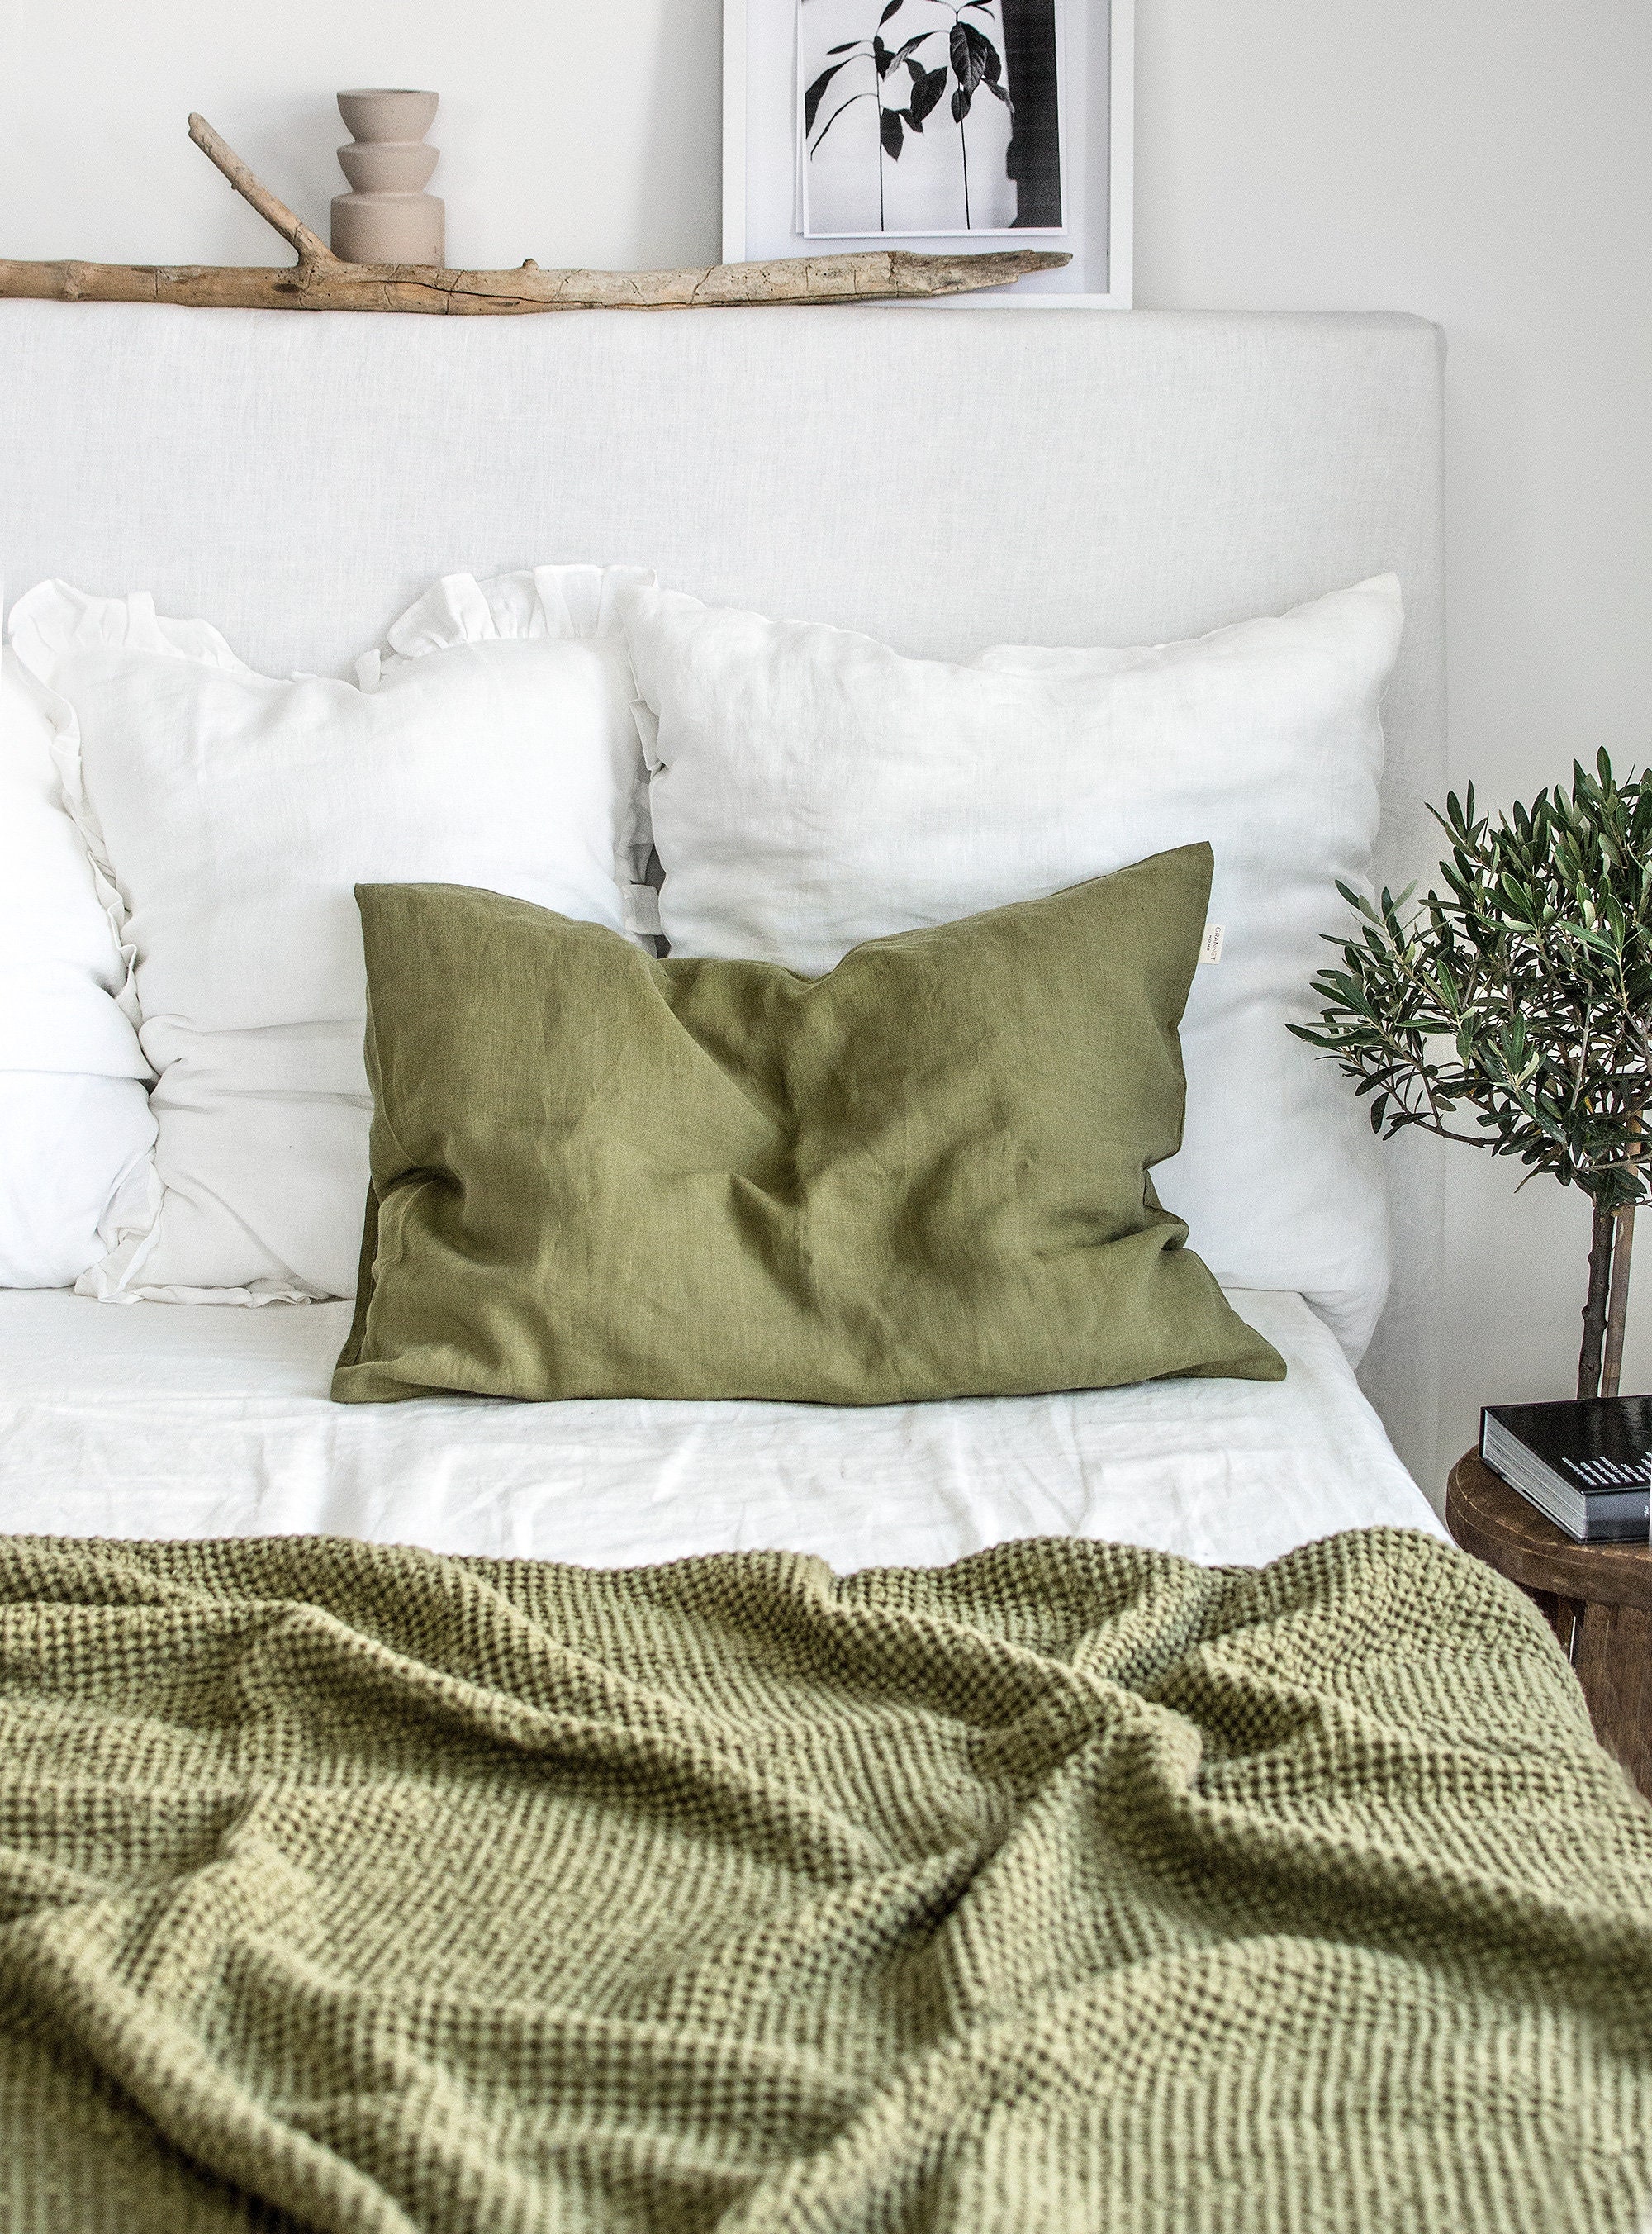 Linen Duvet Cover, Moss Green Linen Bedding, Stonewashed Natural Quilt  Cover, Linen Gift Idea 